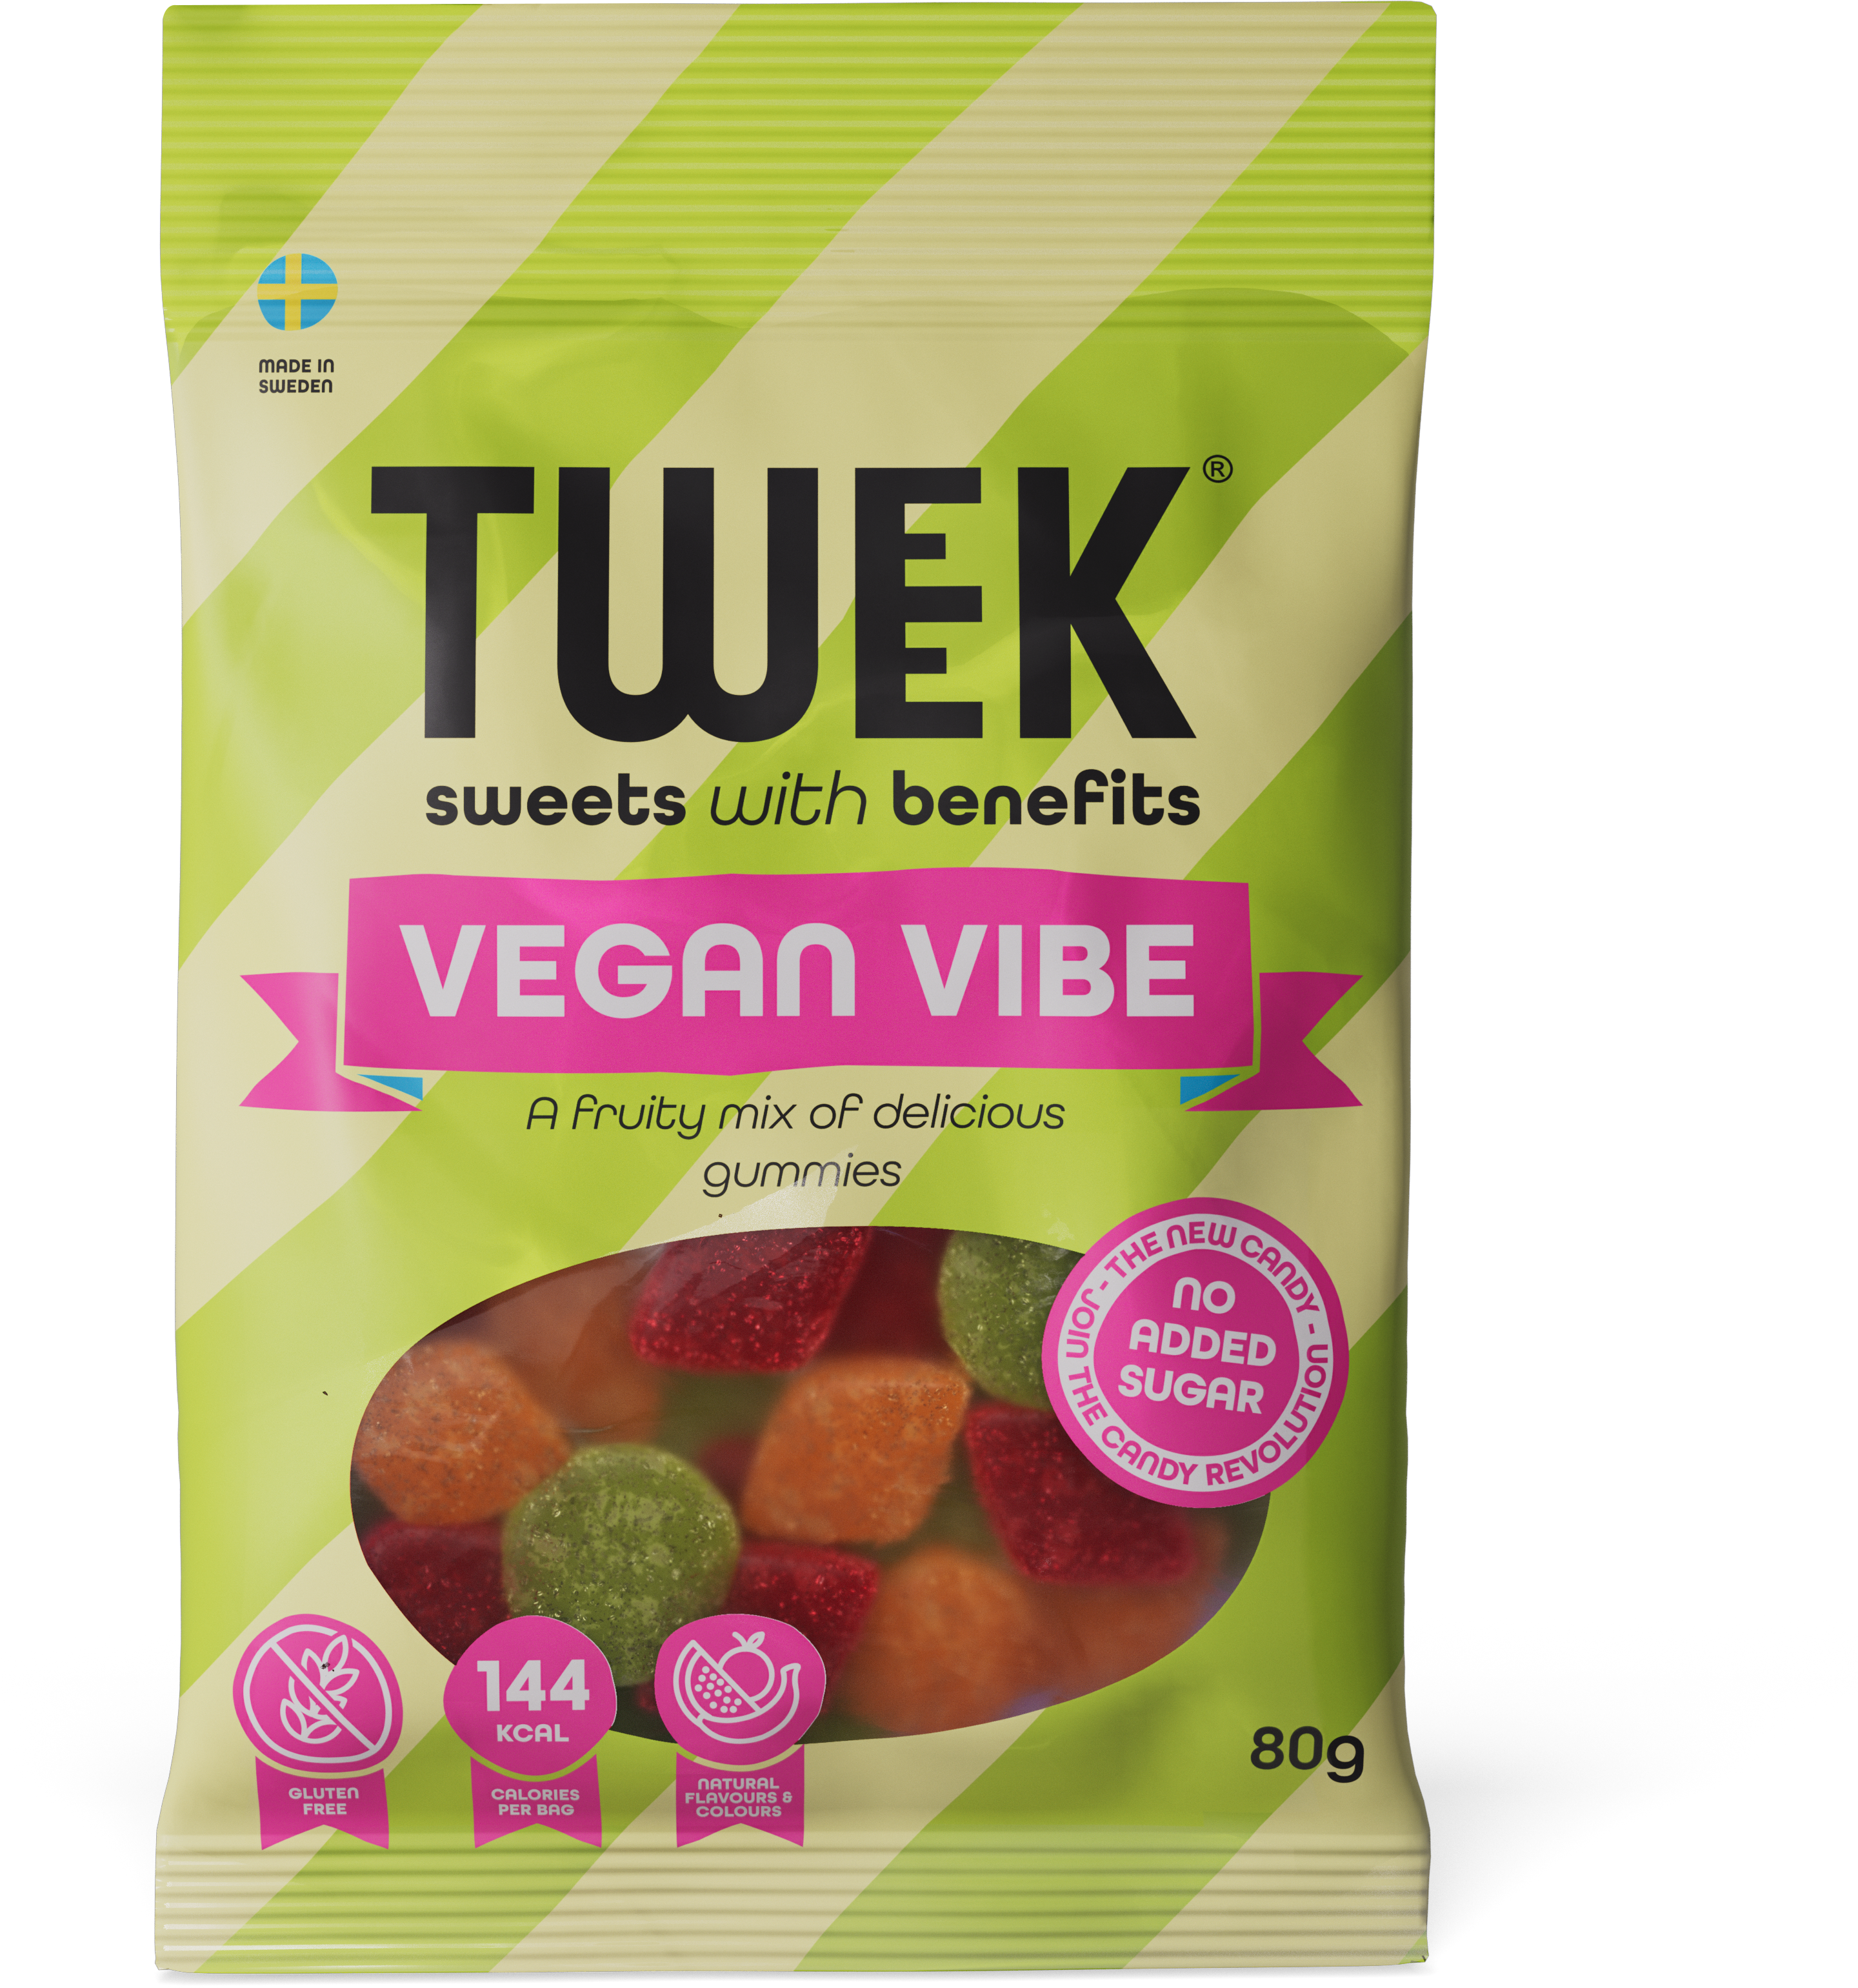 Tweek-VeganVibe